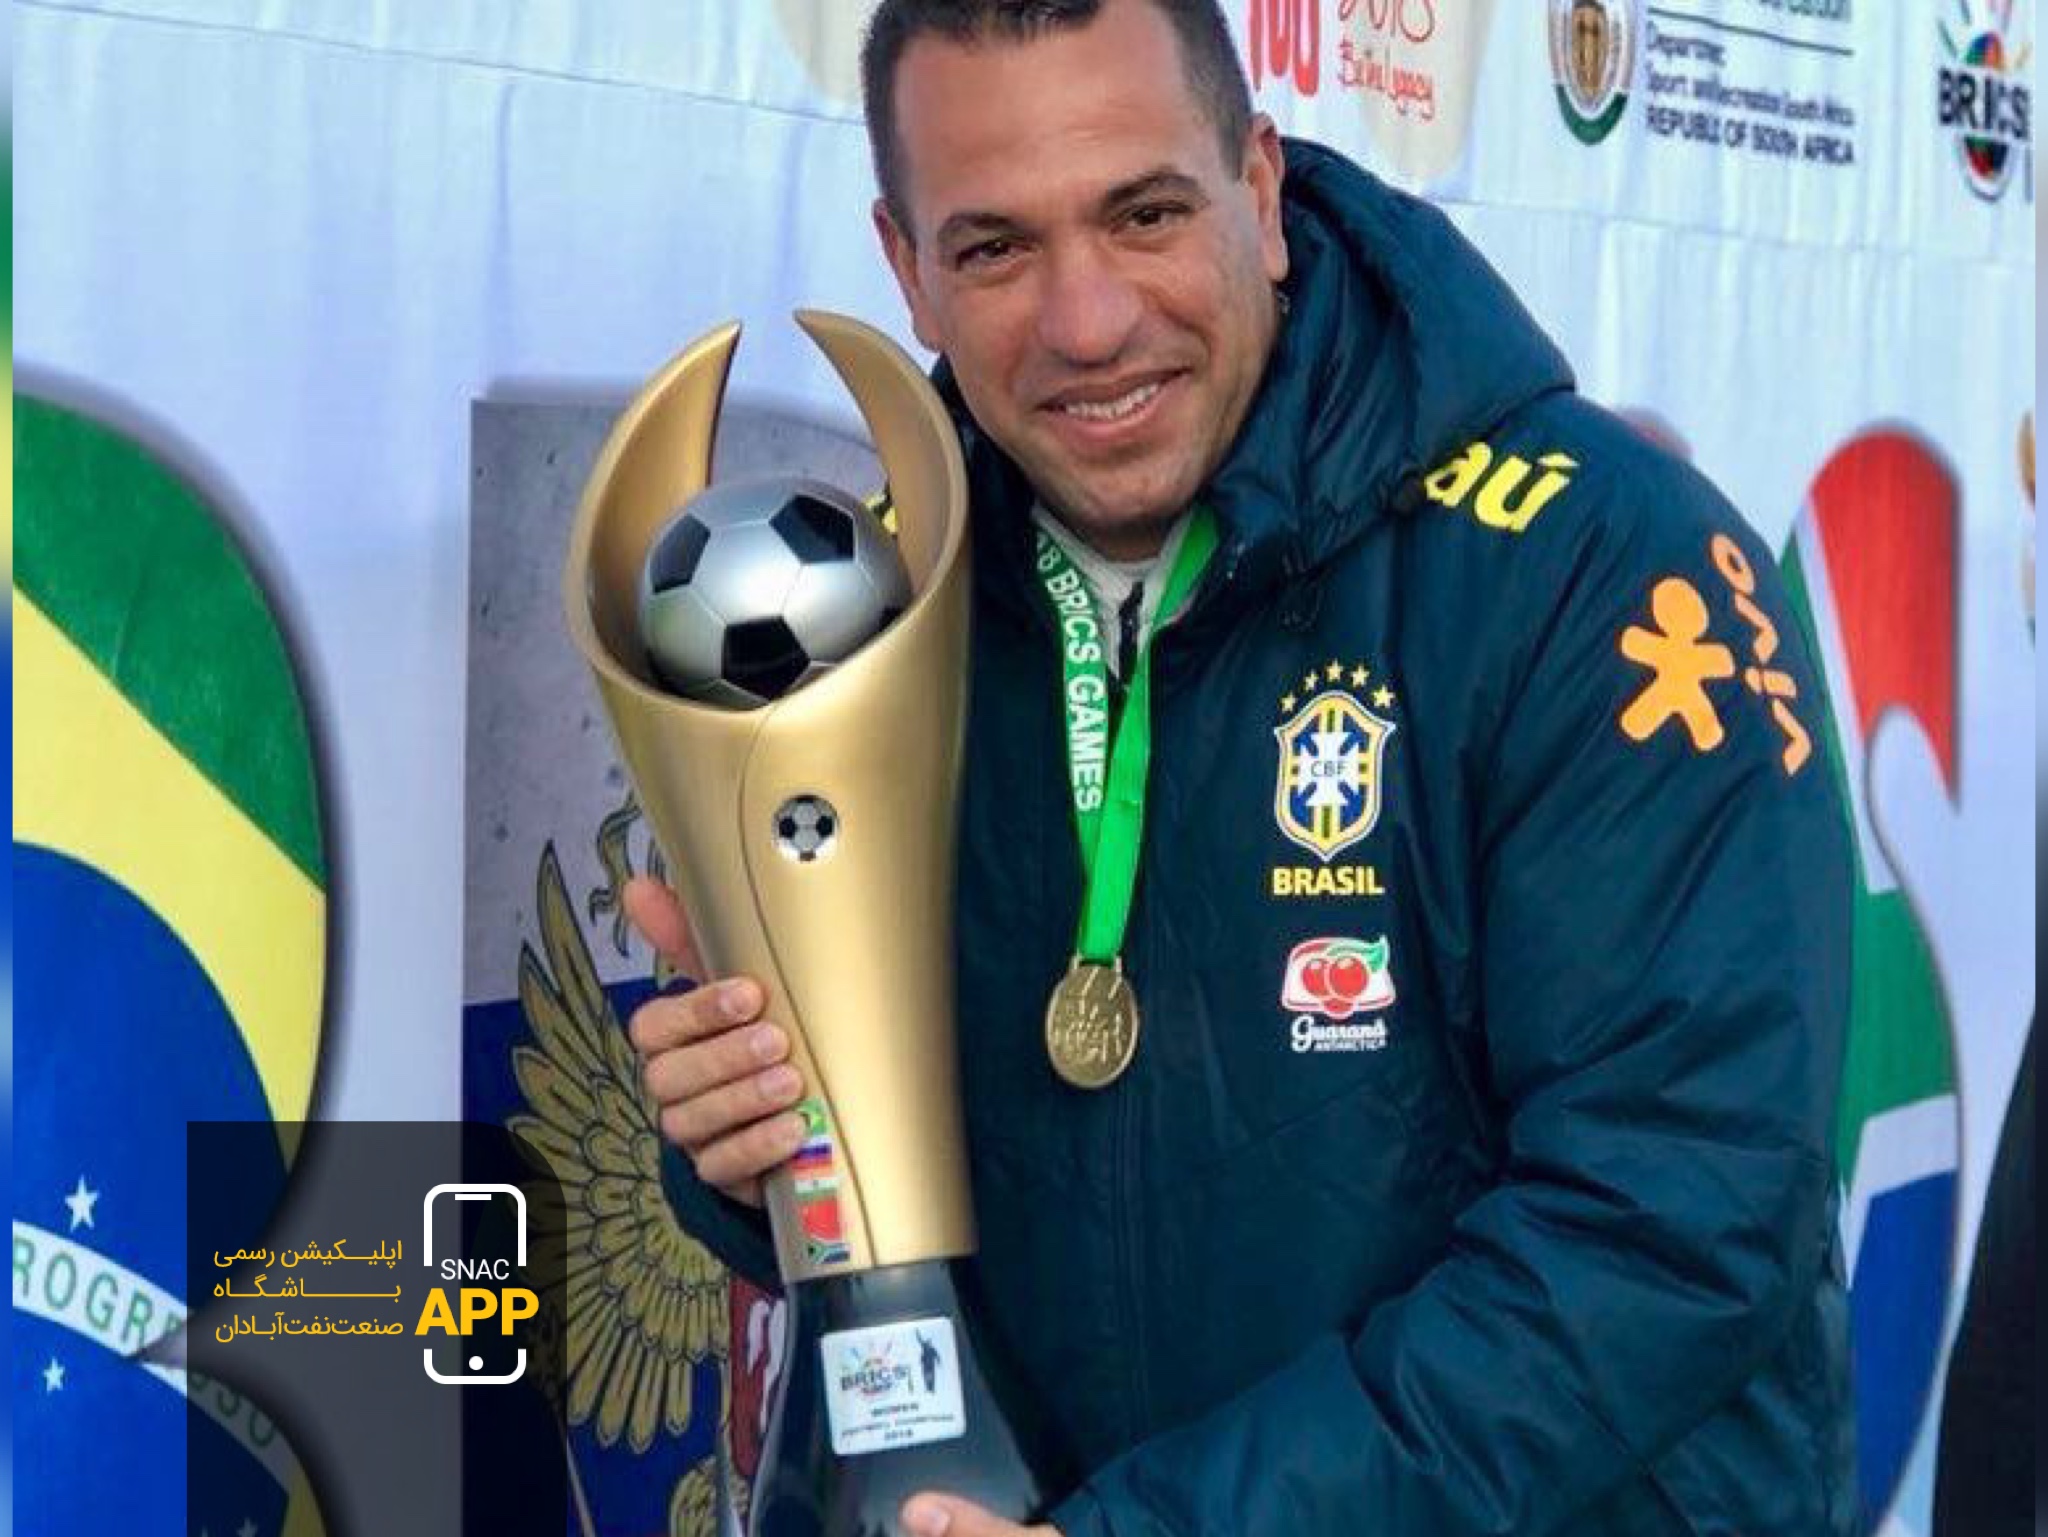 معرفی رودریگو باروکا مربی برزیلی دروازه بانان تیم فوتبال صنعت نفت آبادان